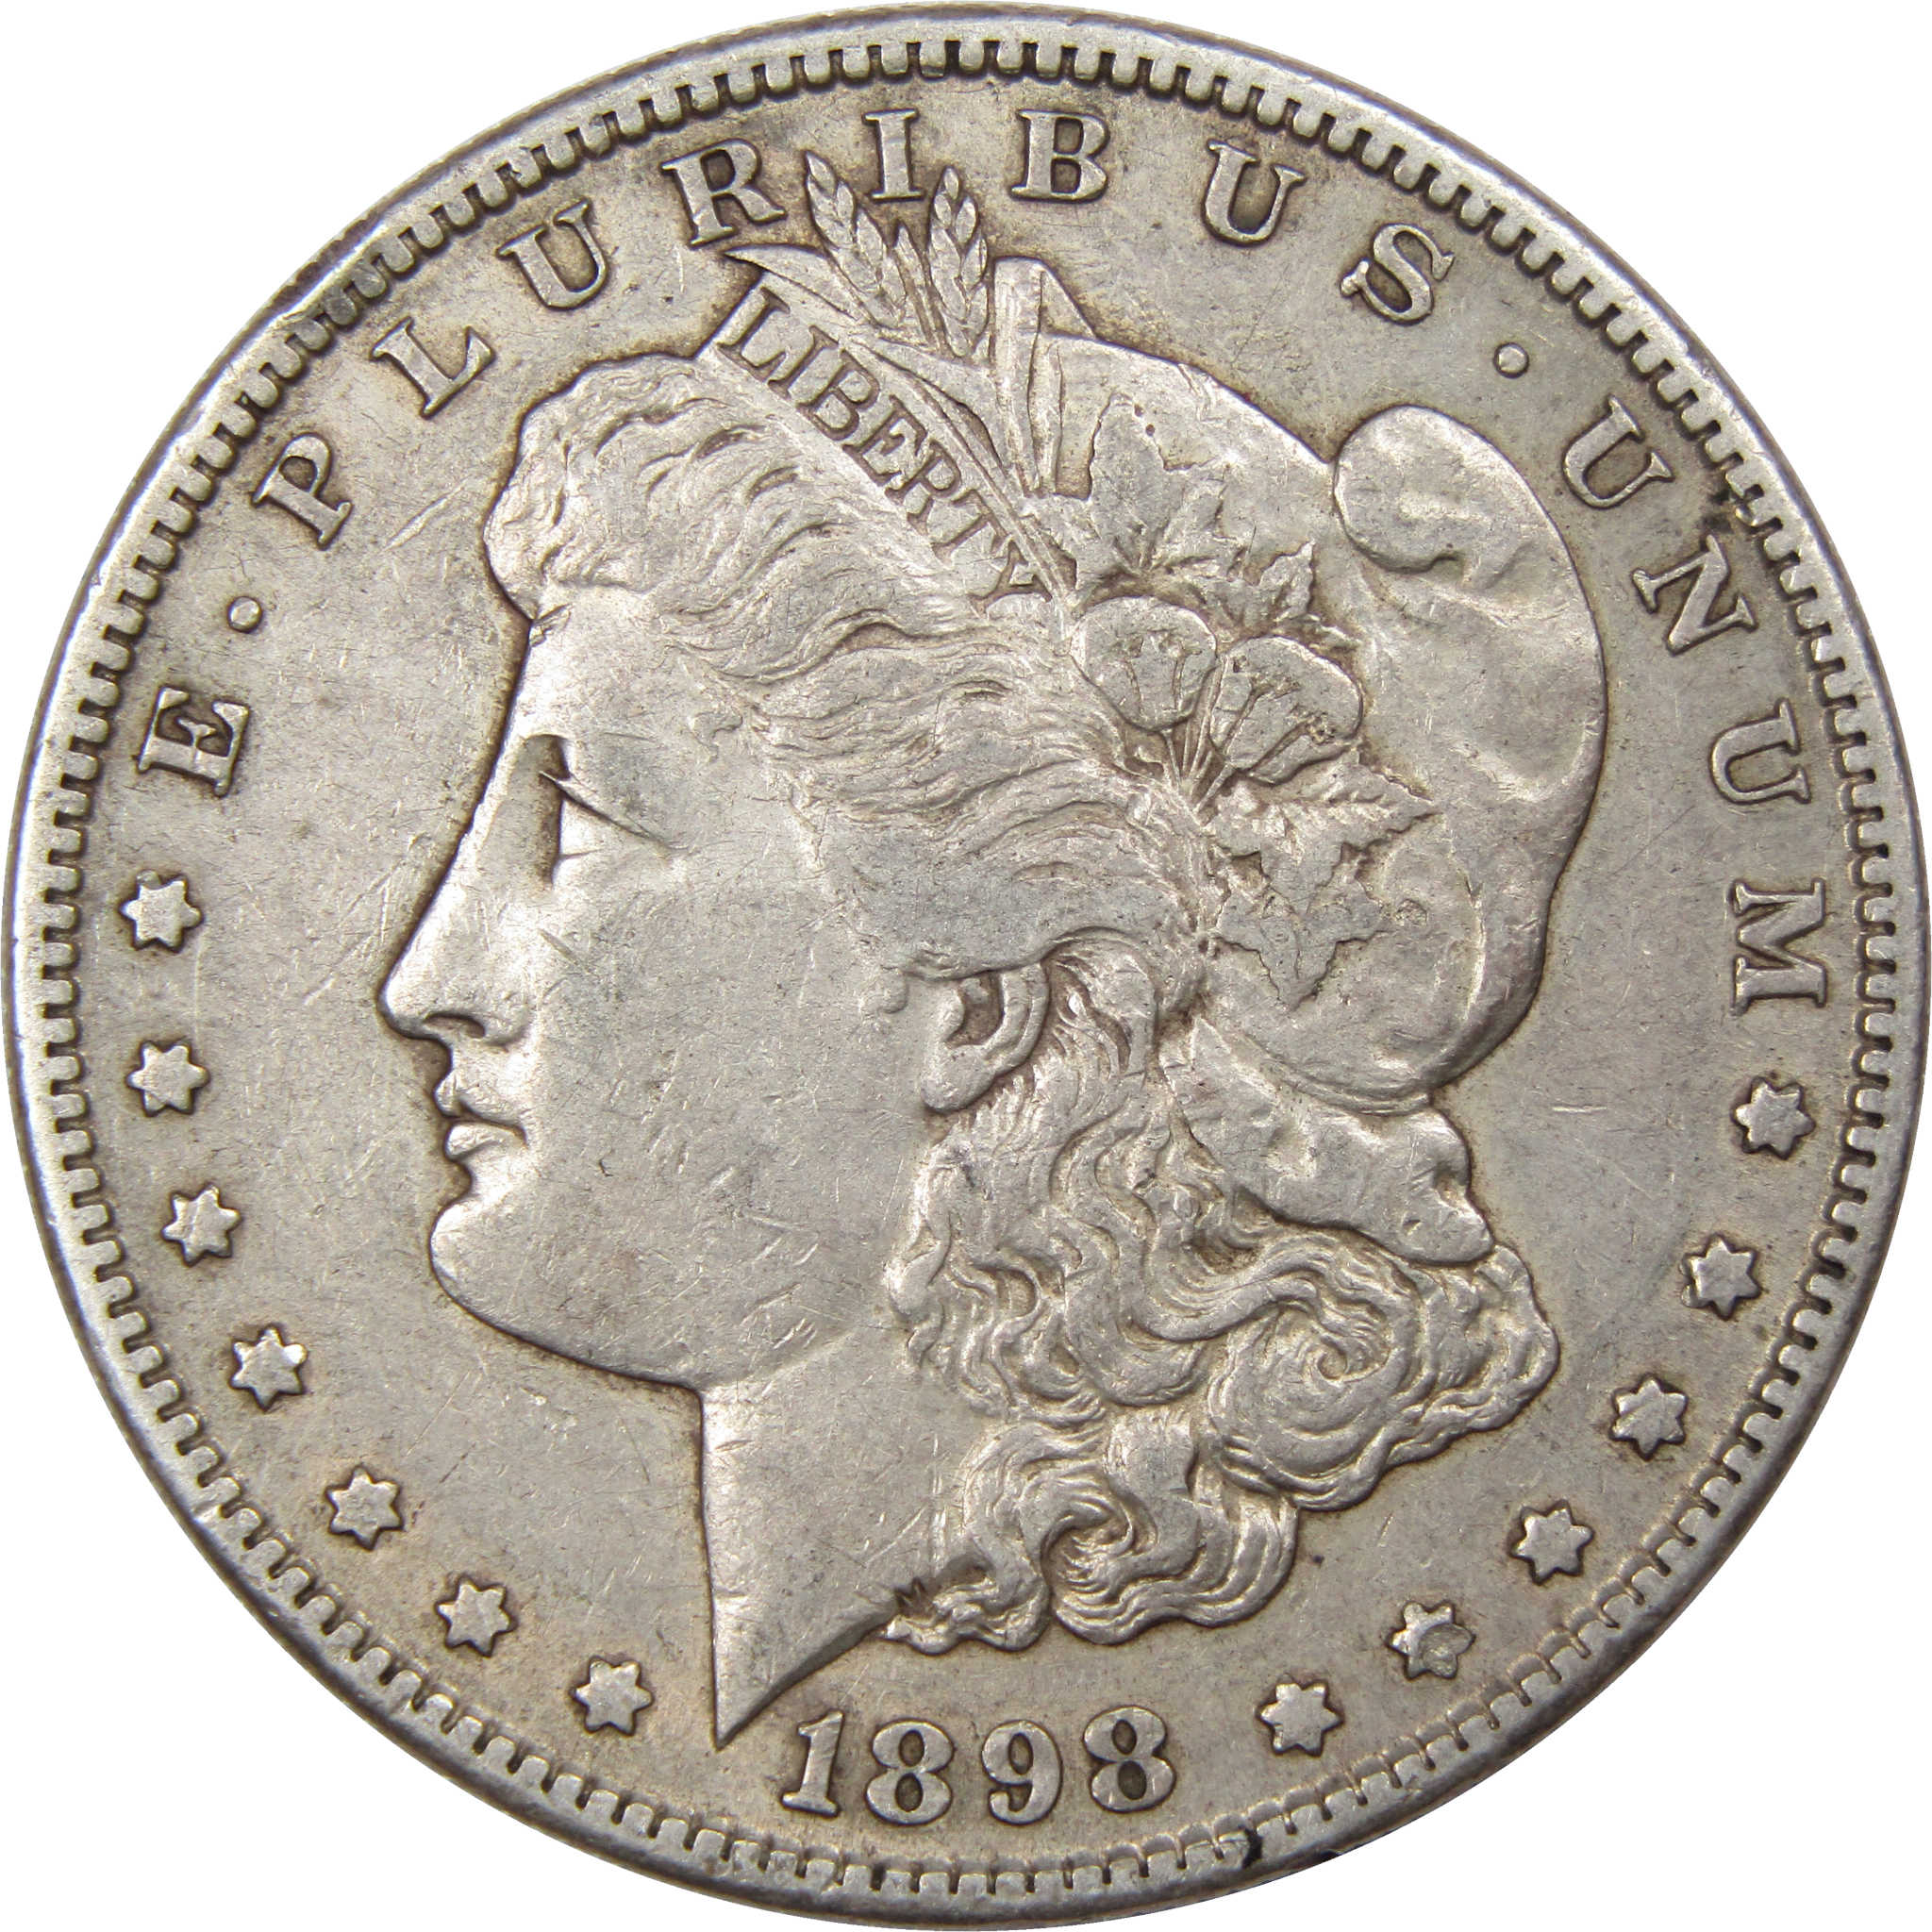 1903 Morgan Silver Dollar Coin Value Prices, Photos & Info